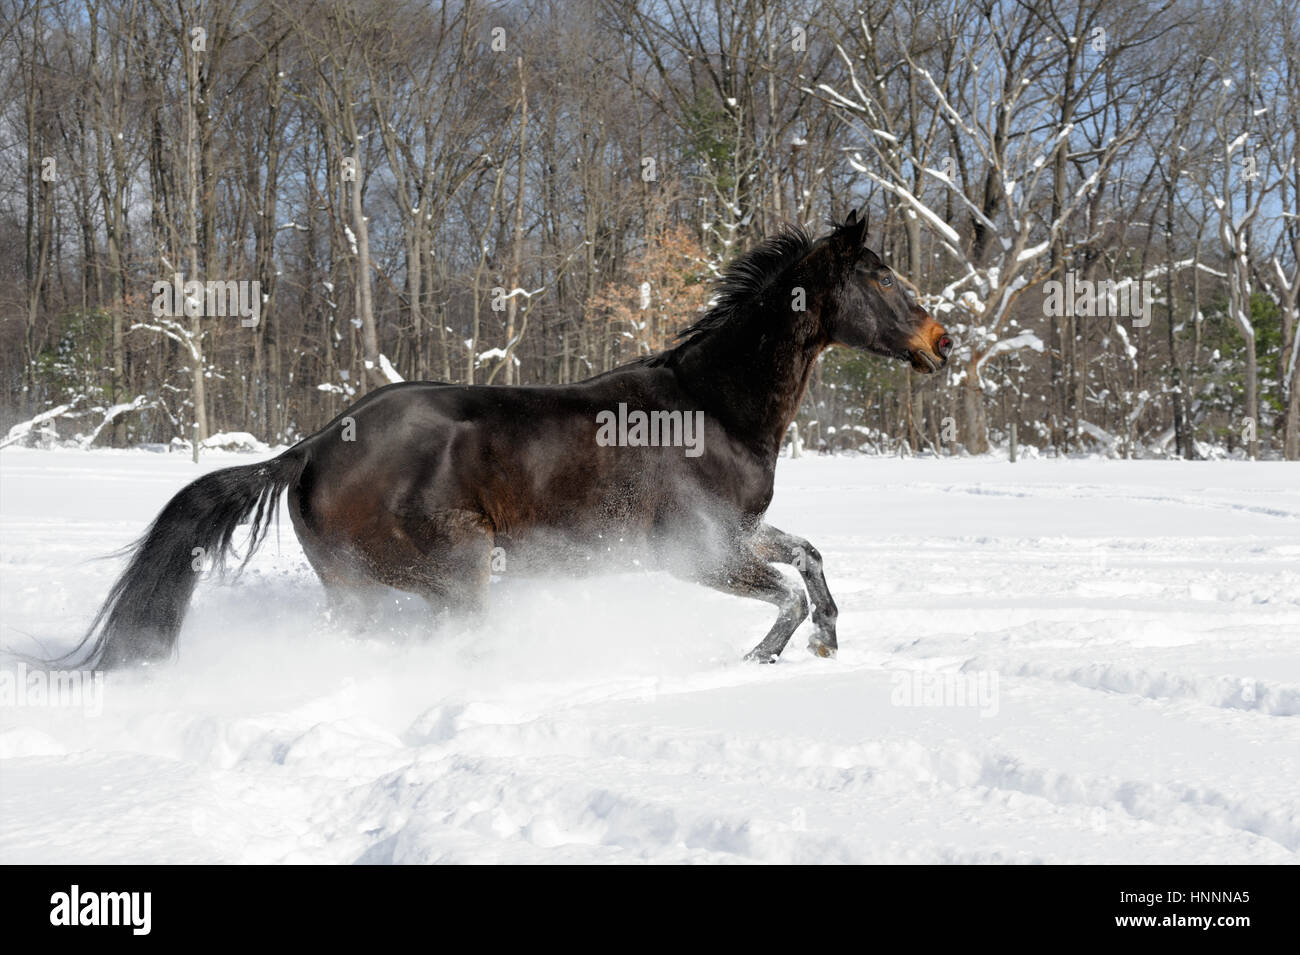 Black Beauty Quarter Horse con una melena negra ejecutando vigorosamente a través de la profunda nieve en polvo, cerca de una línea de árboles en una soleada finca vallada en campo en invierno Foto de stock